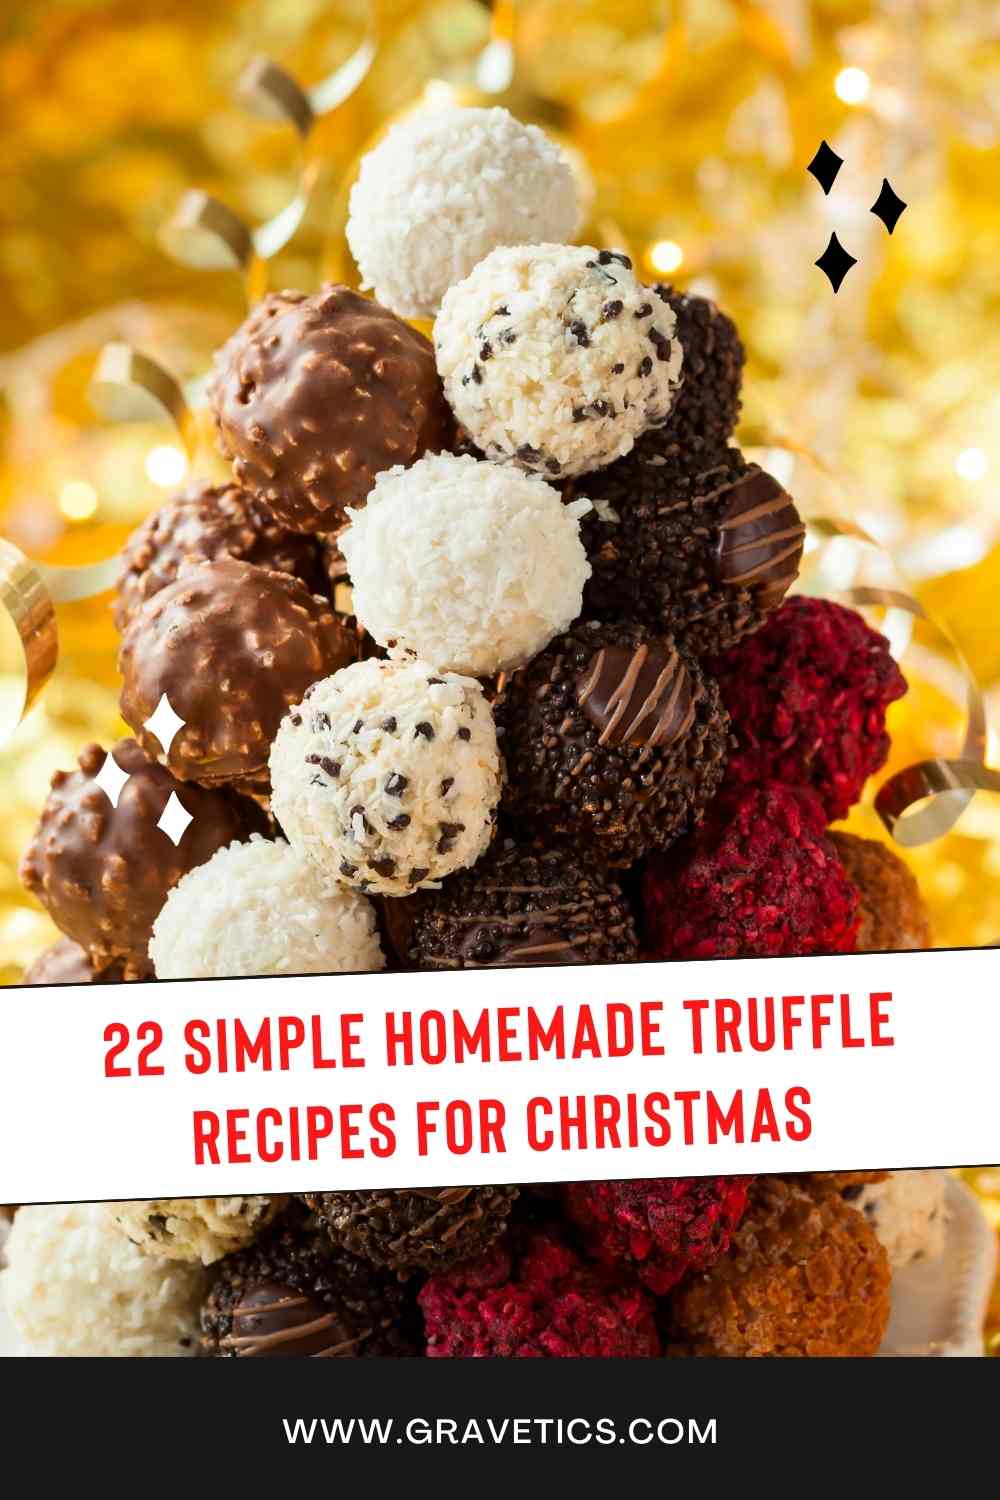 Homemade Truffle Recipes For Christmas